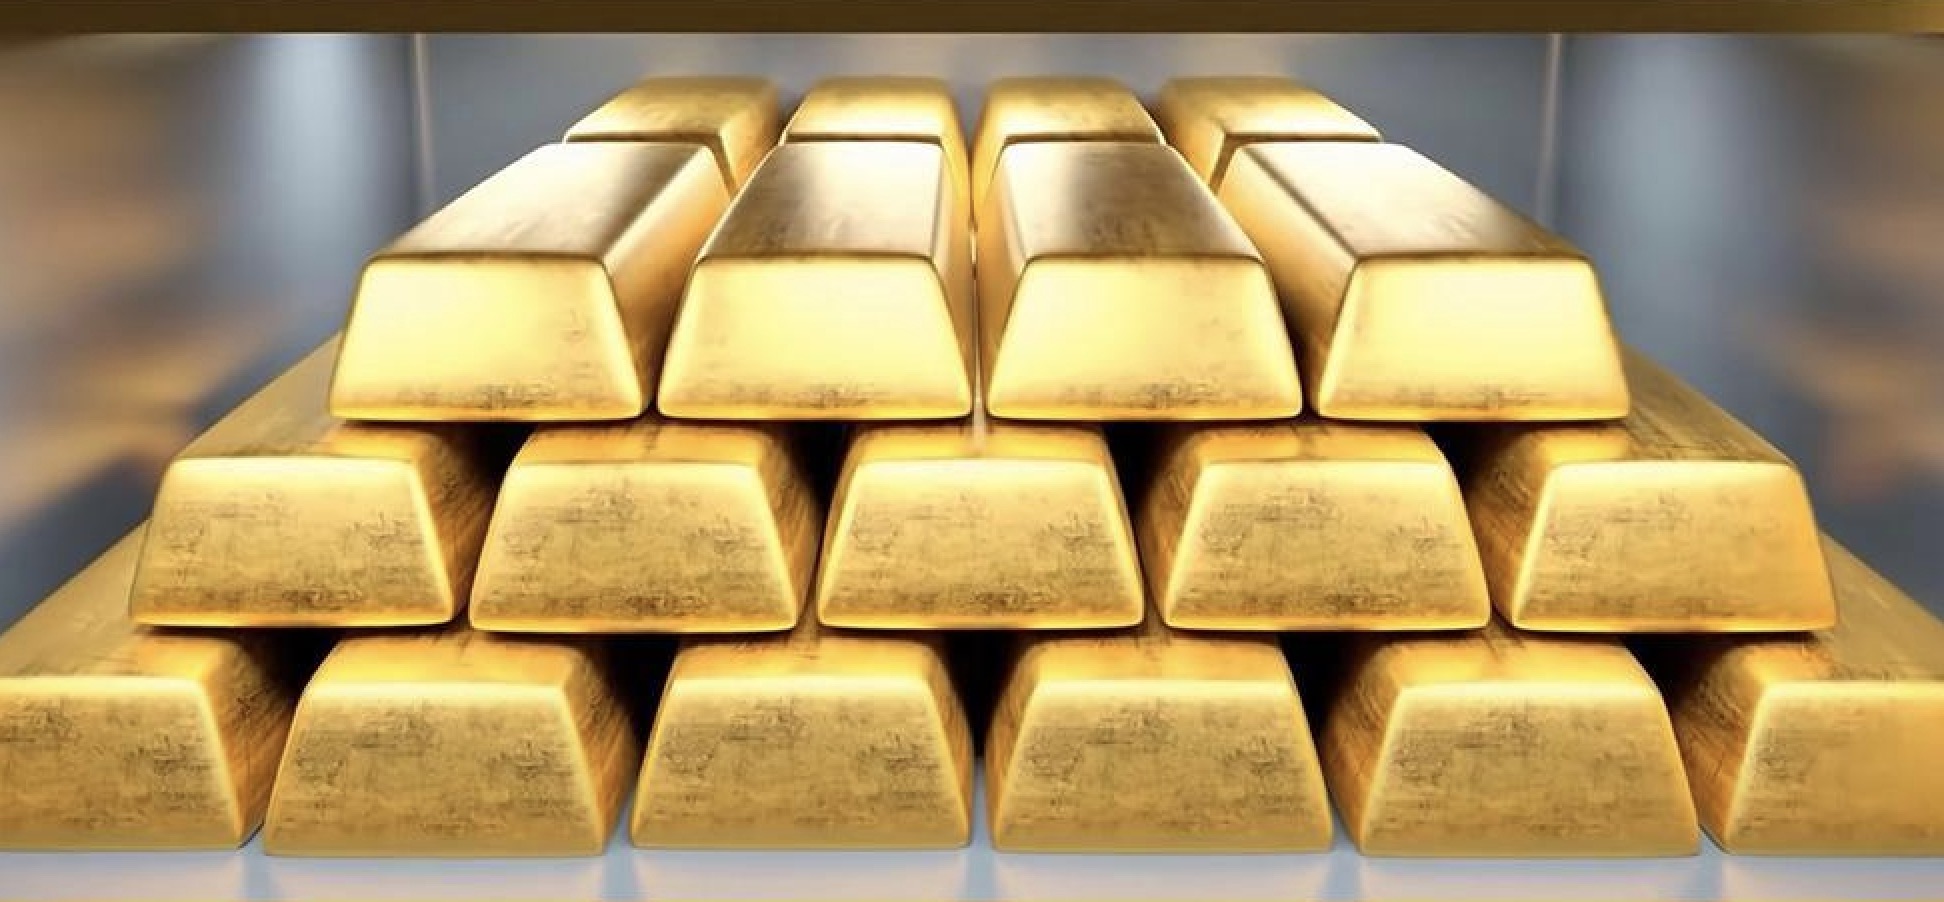 คำเตือนการซื้อขายทองคำ: ราคาทองคำอยู่ภายใต้แรงกดดันต่อเส้นค่าเฉลี่ยเคลื่อนที่ 21 วัน และตลาดกังวลว่าพาวเวลล์จะพลิกผันแบบเหยี่ยว